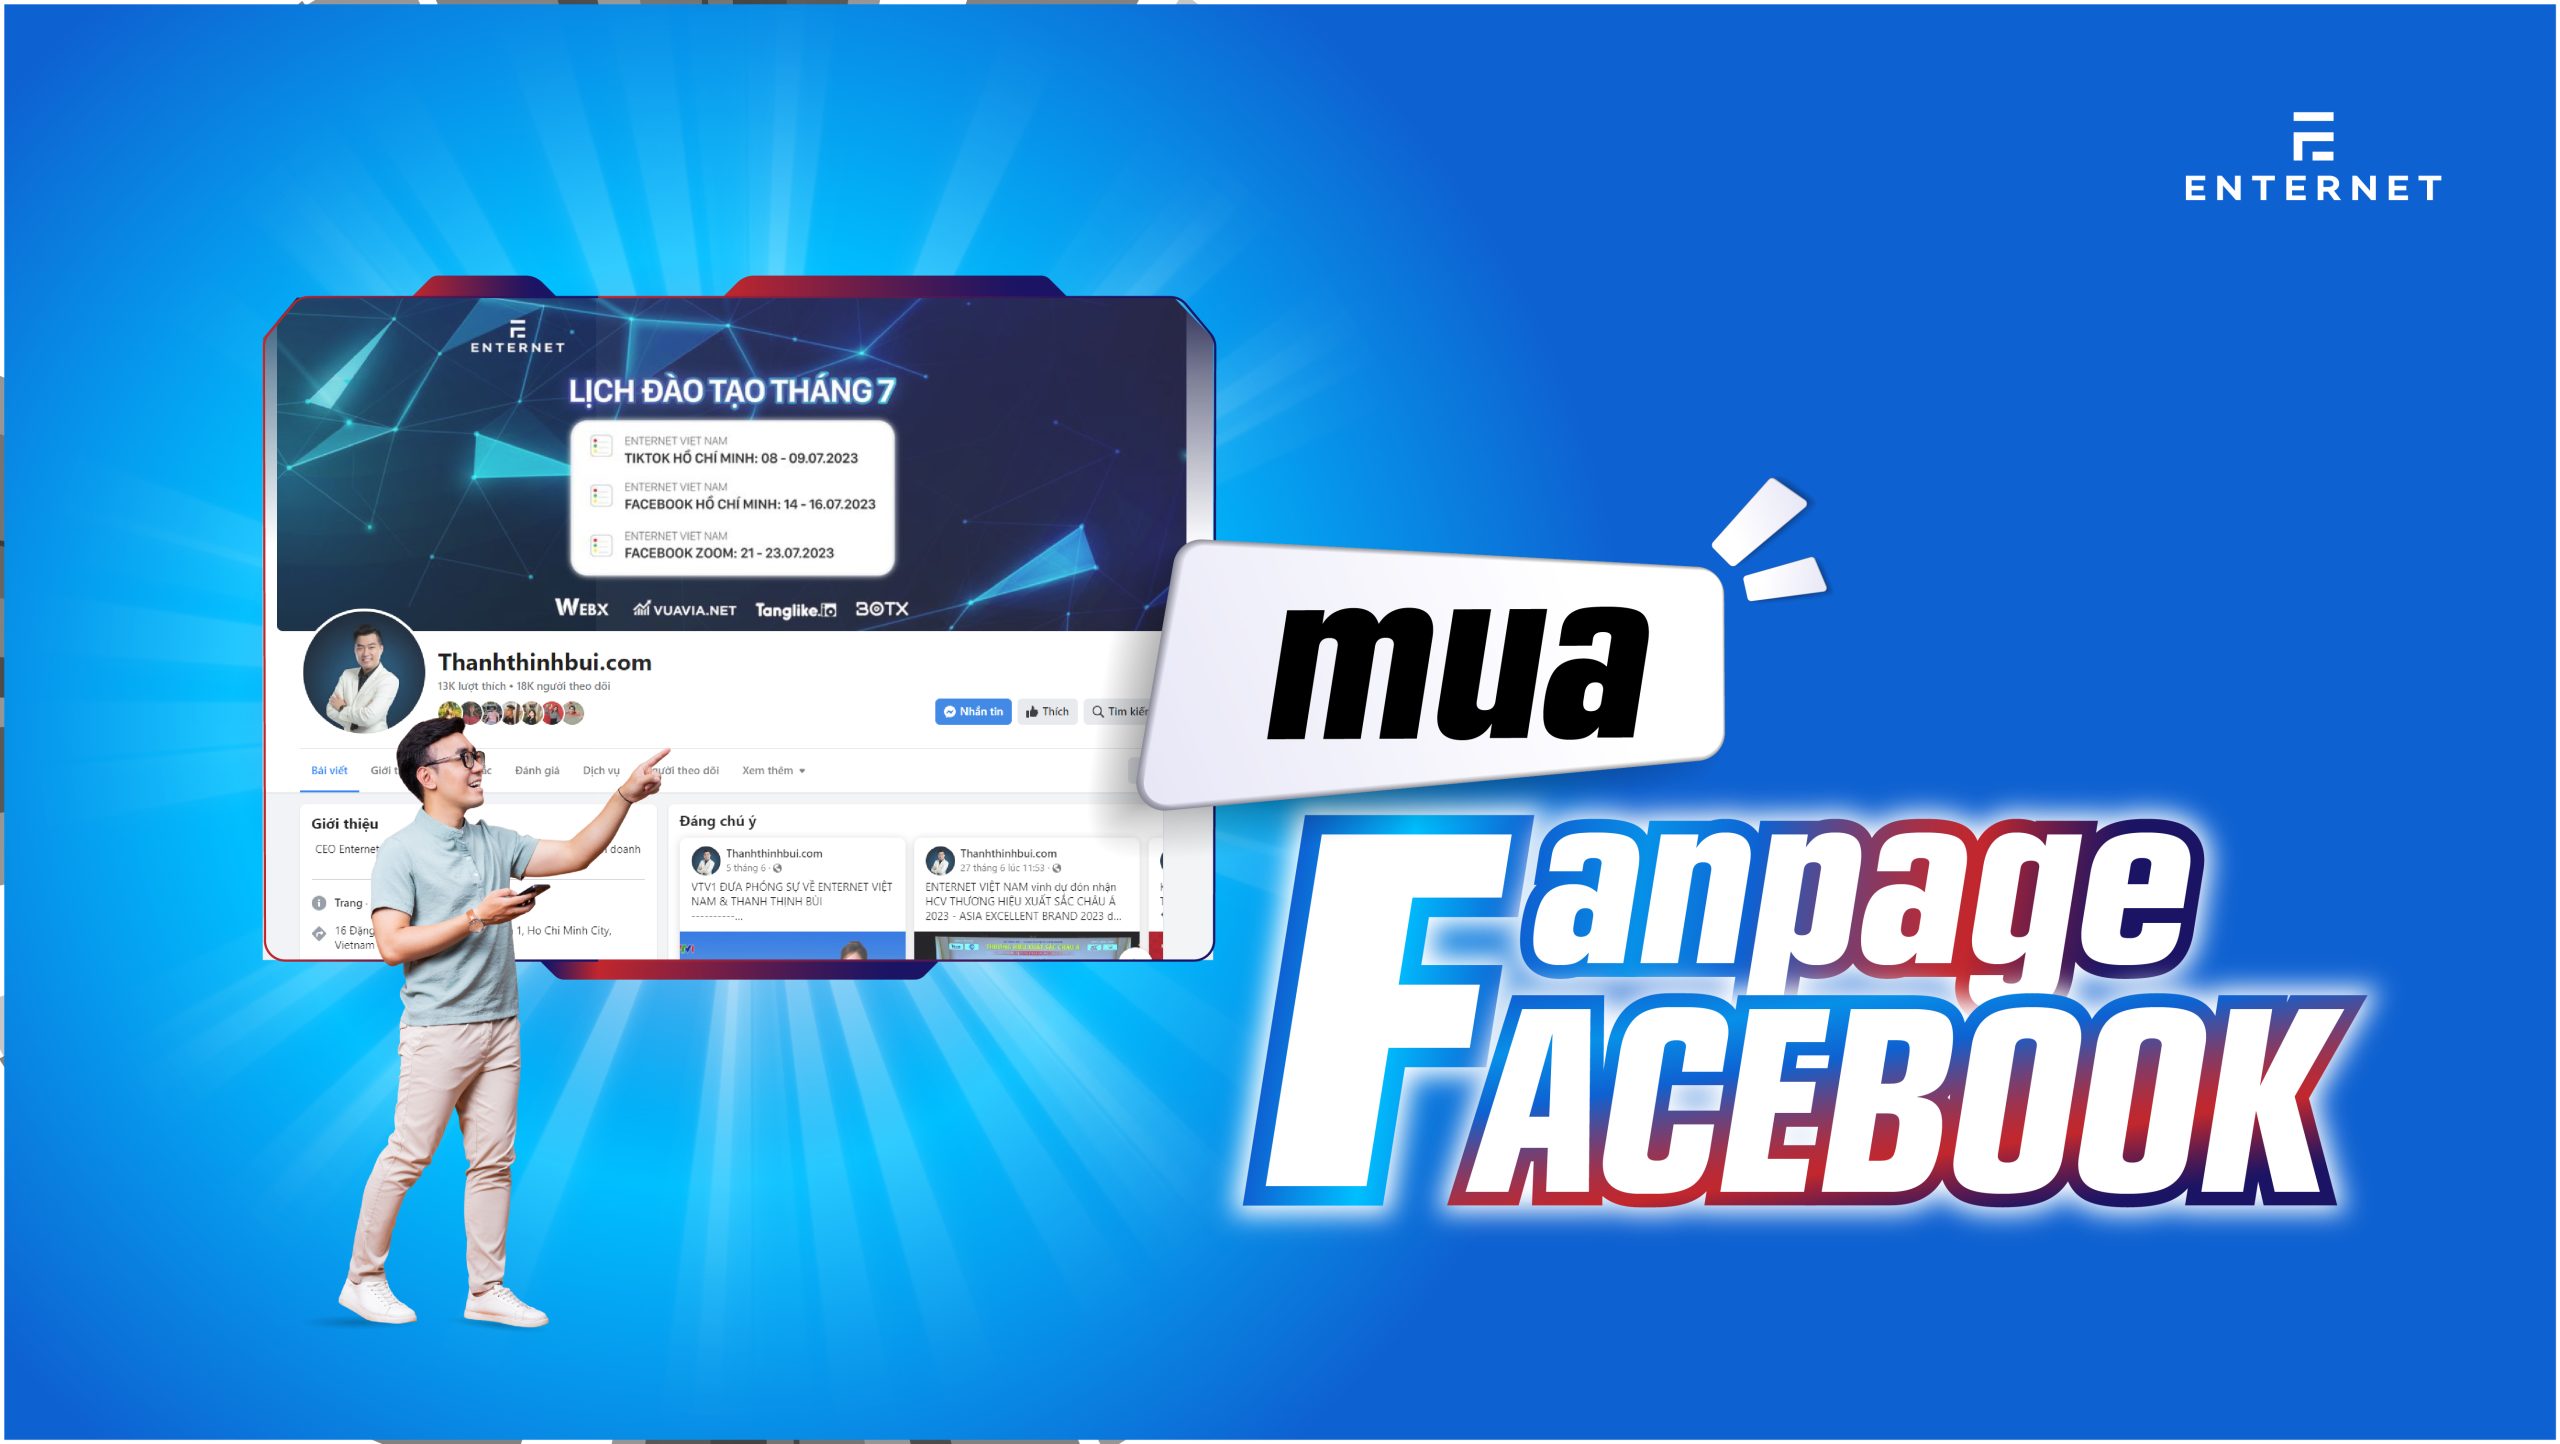 Mua fanpage facebook tại Vuavia.vn